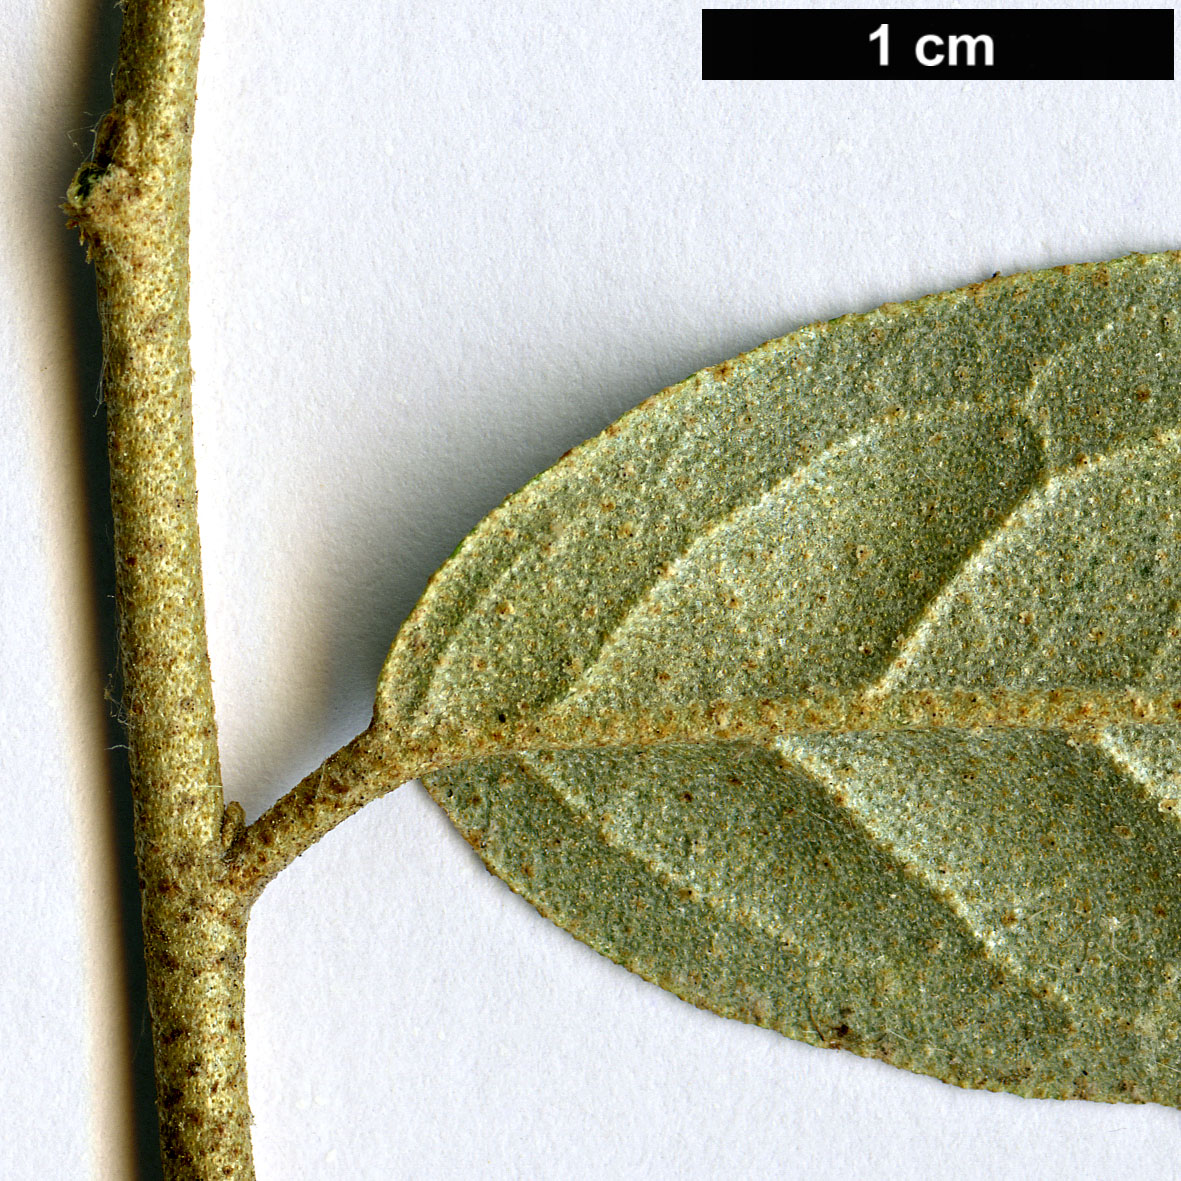 High resolution image: Family: Elaeagnaceae - Genus: Elaeagnus - Taxon: latifolia